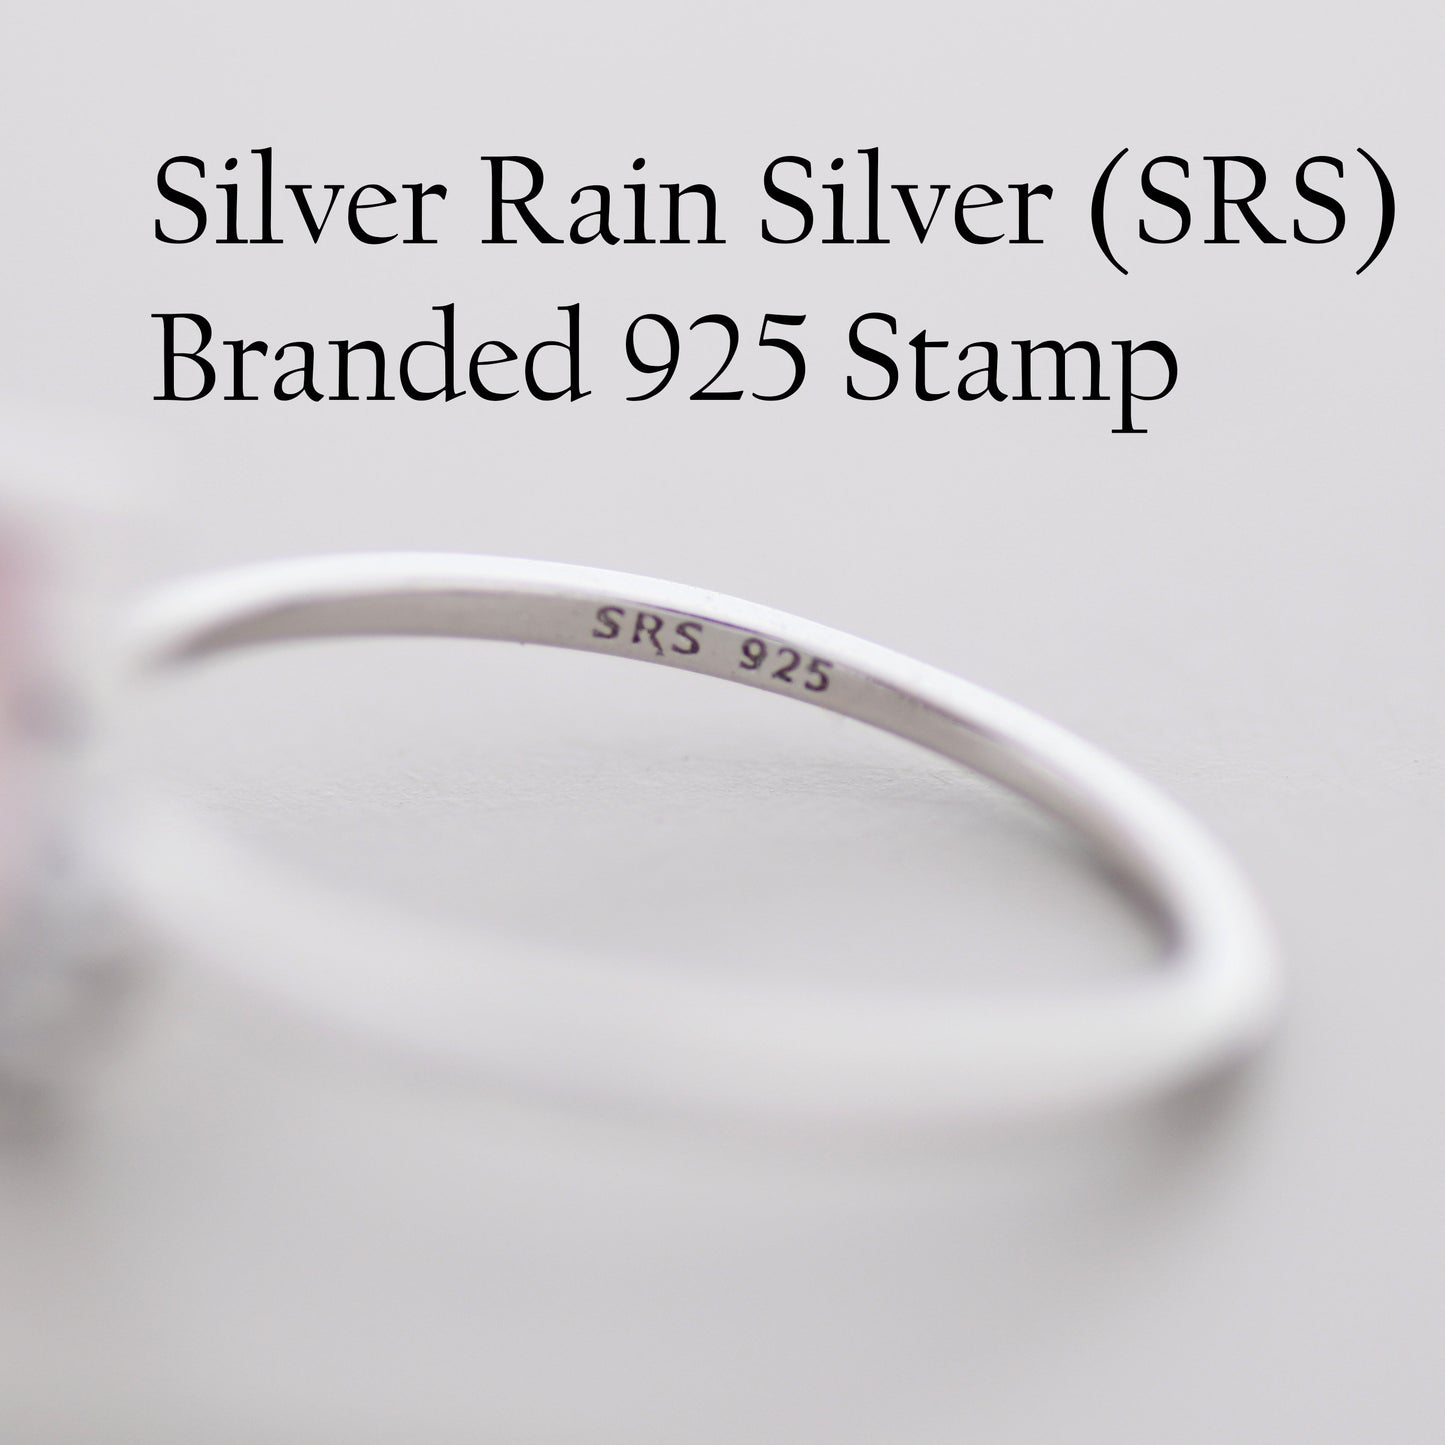 Genuine Oval Rose Quartz Ring in Sterling Silver, Natural Rose Quartz Ring, Three CZ, Pink Quartz Crystal, Vintage Inspired Design, US 5 - 8